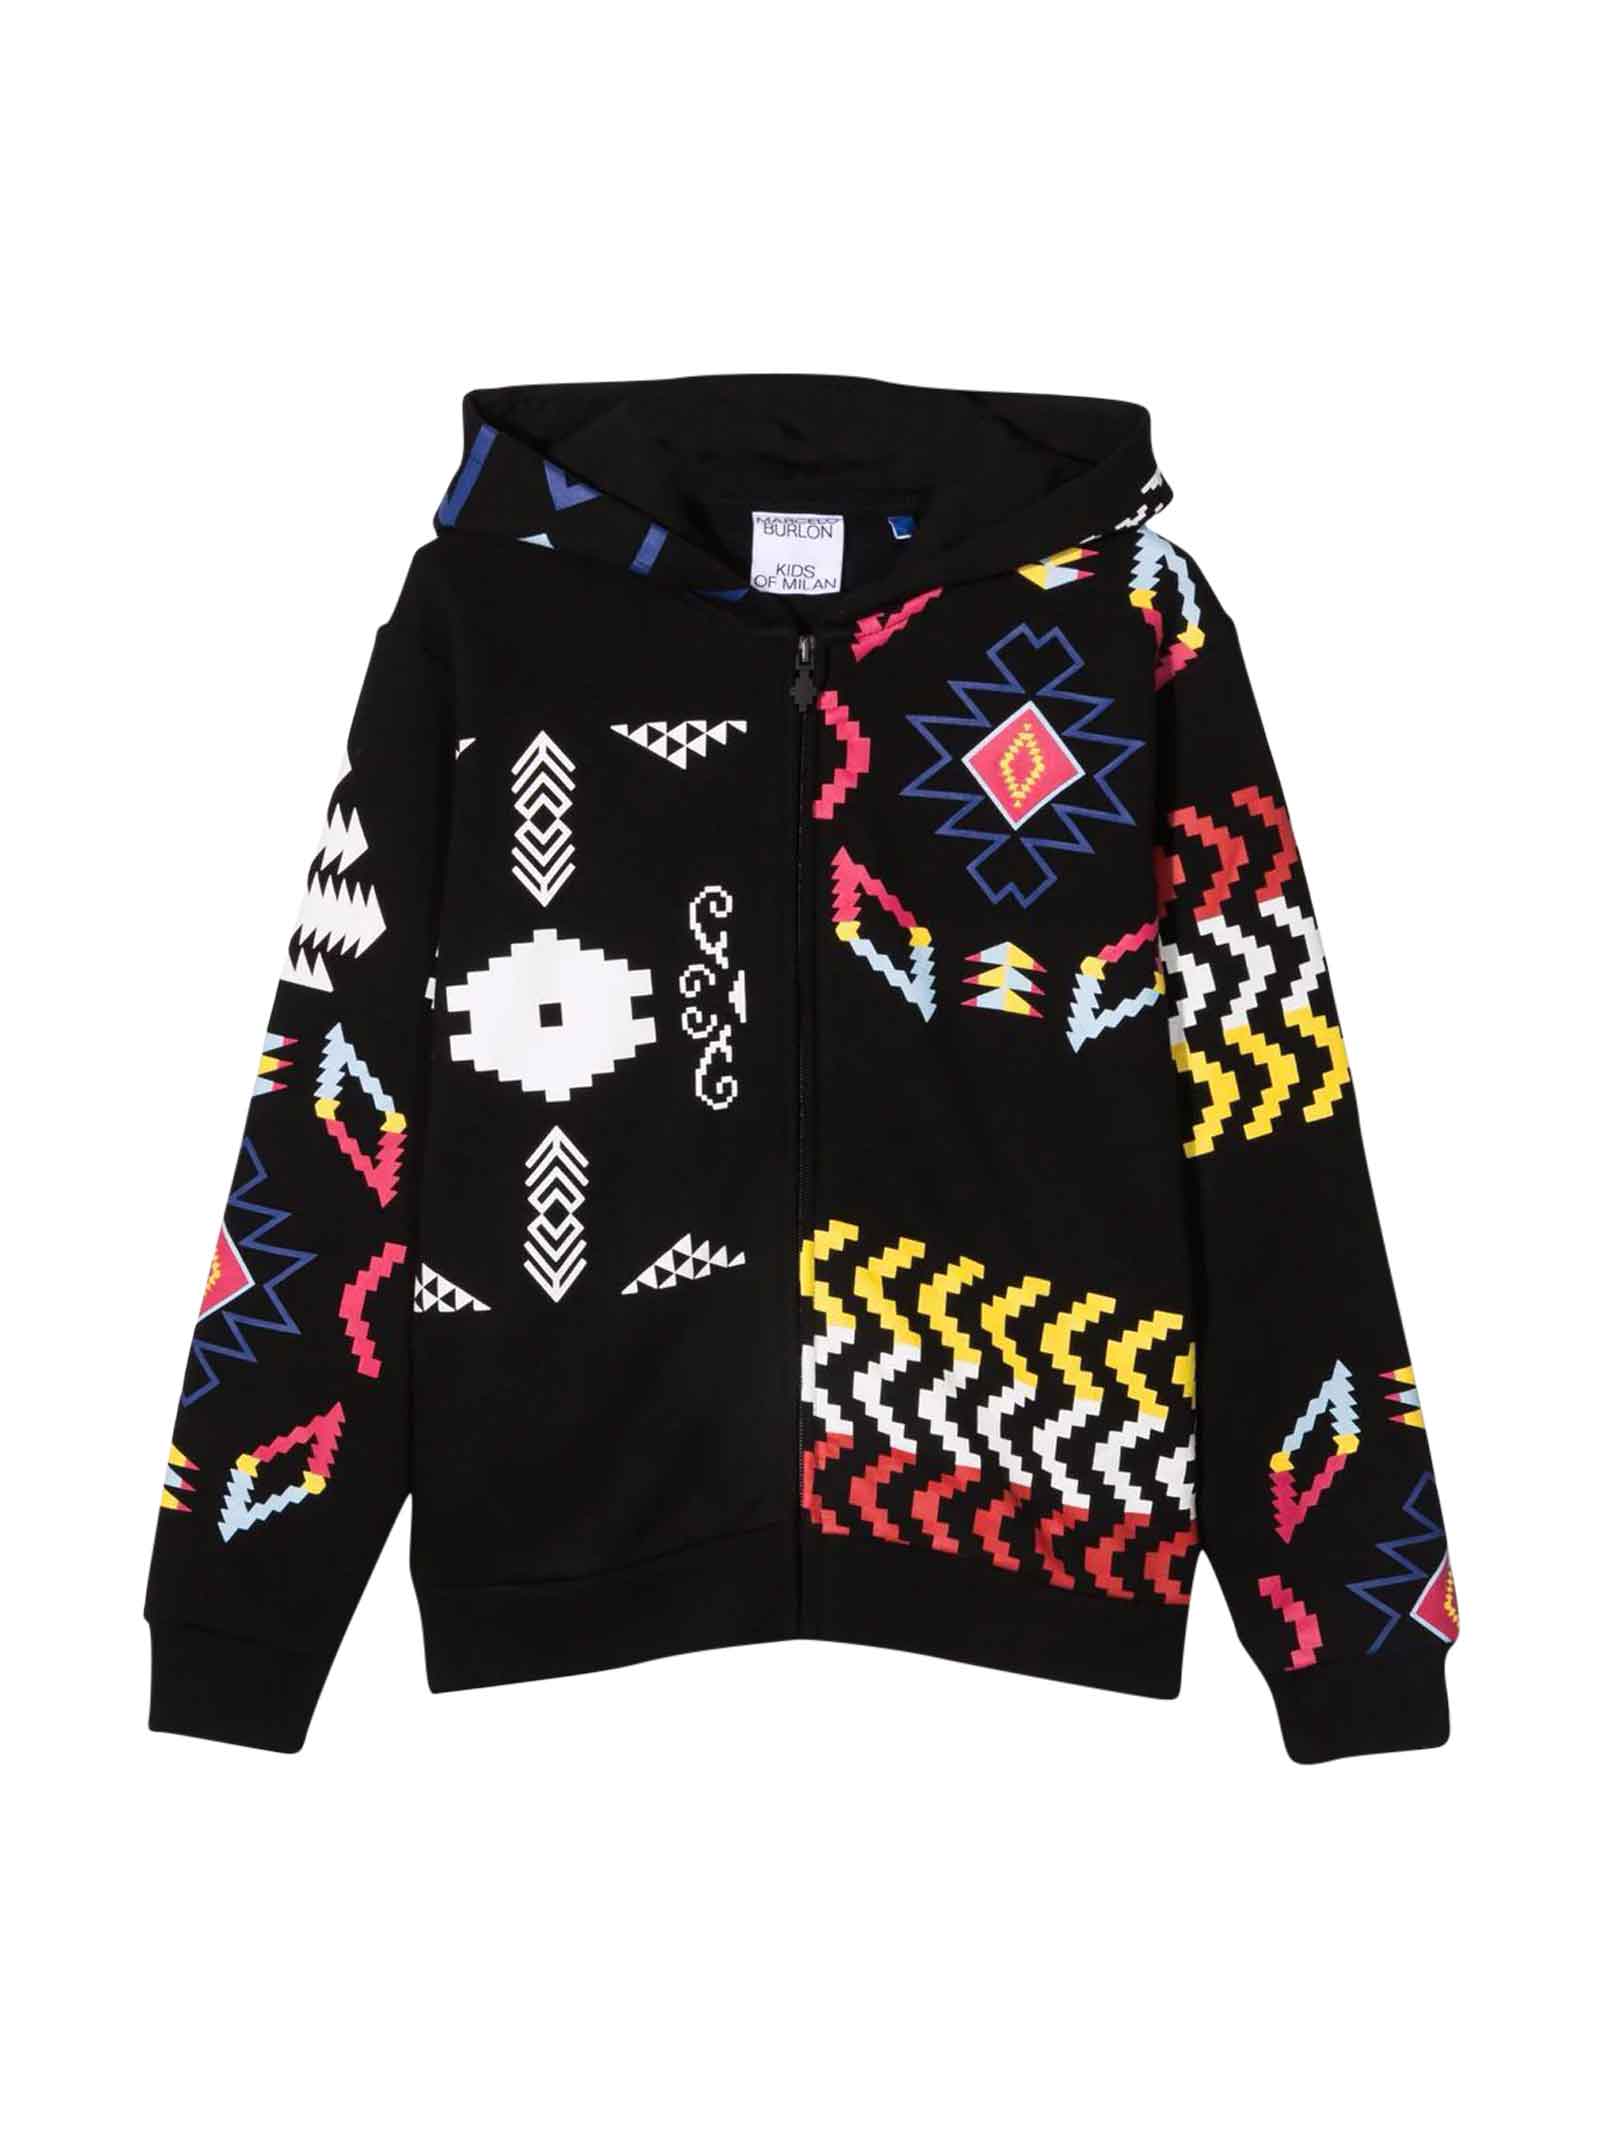 Marcelo Burlon Black Sweatshirt With Multicolor Print